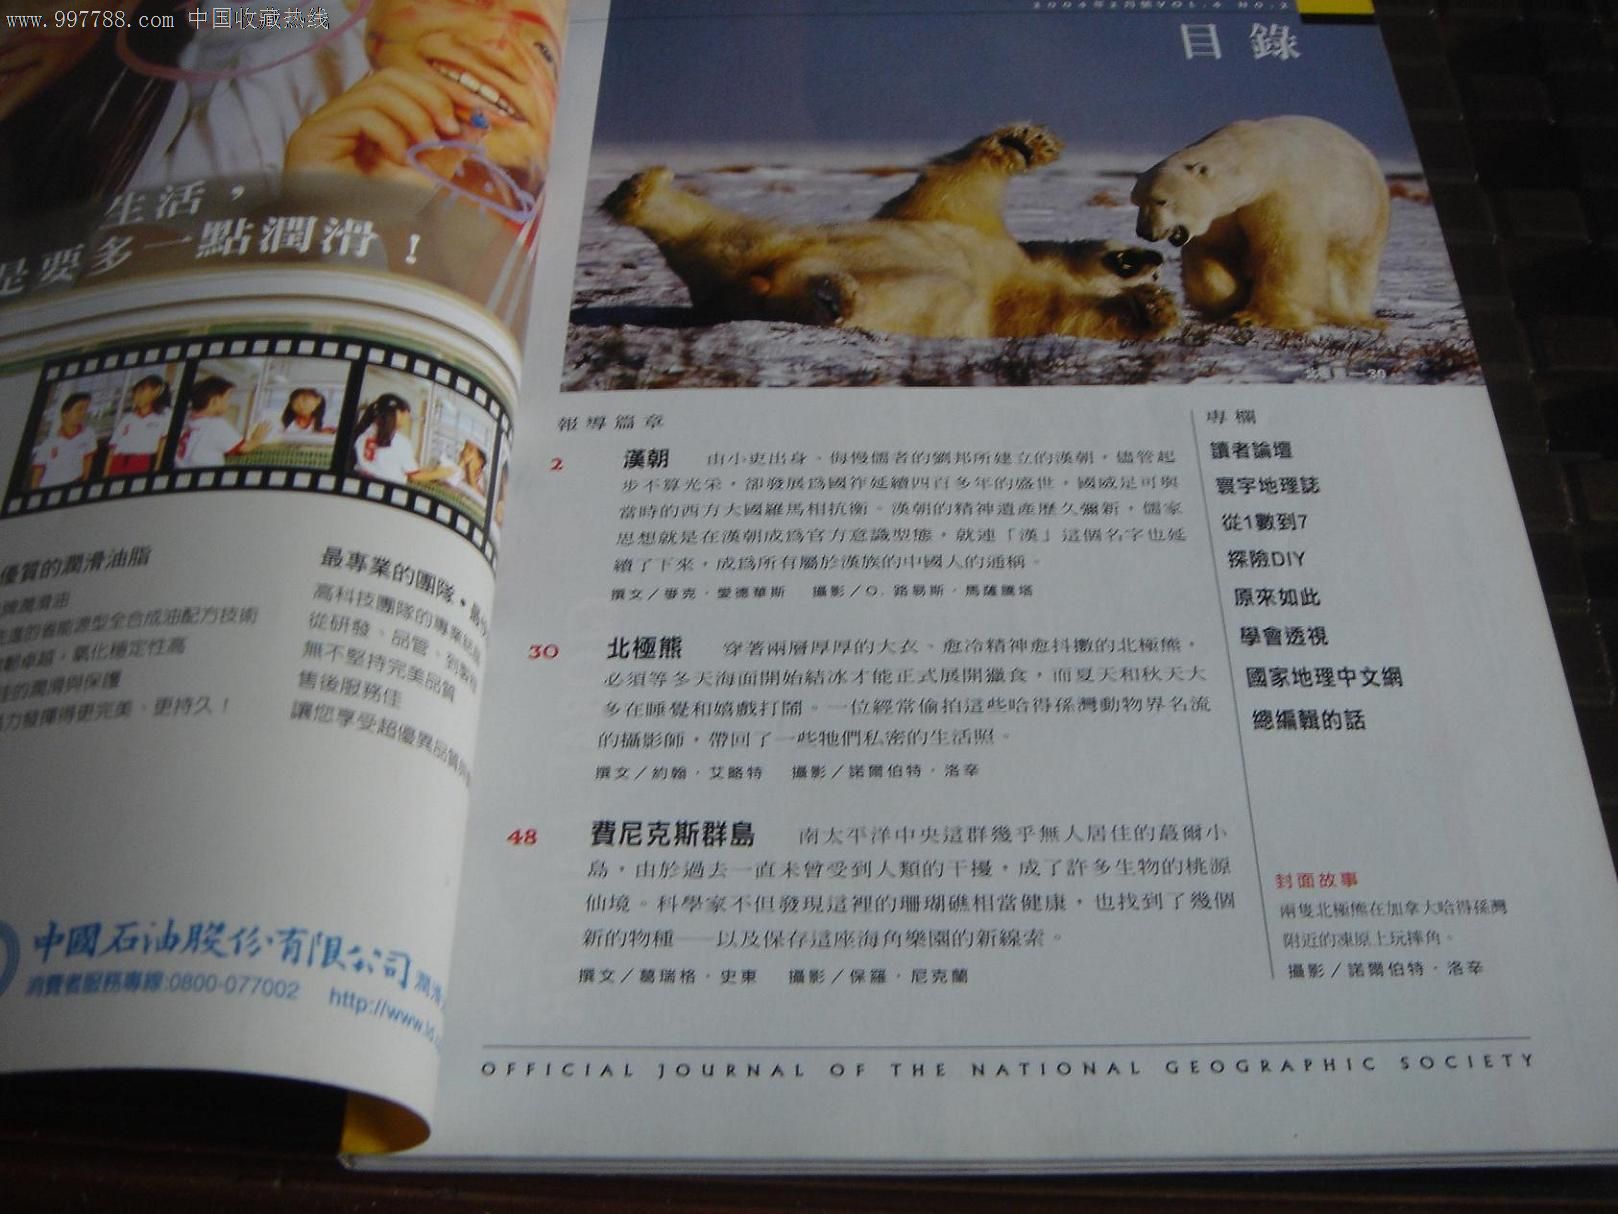 美国国家地理杂志中文版2004年2月号-价格:6元